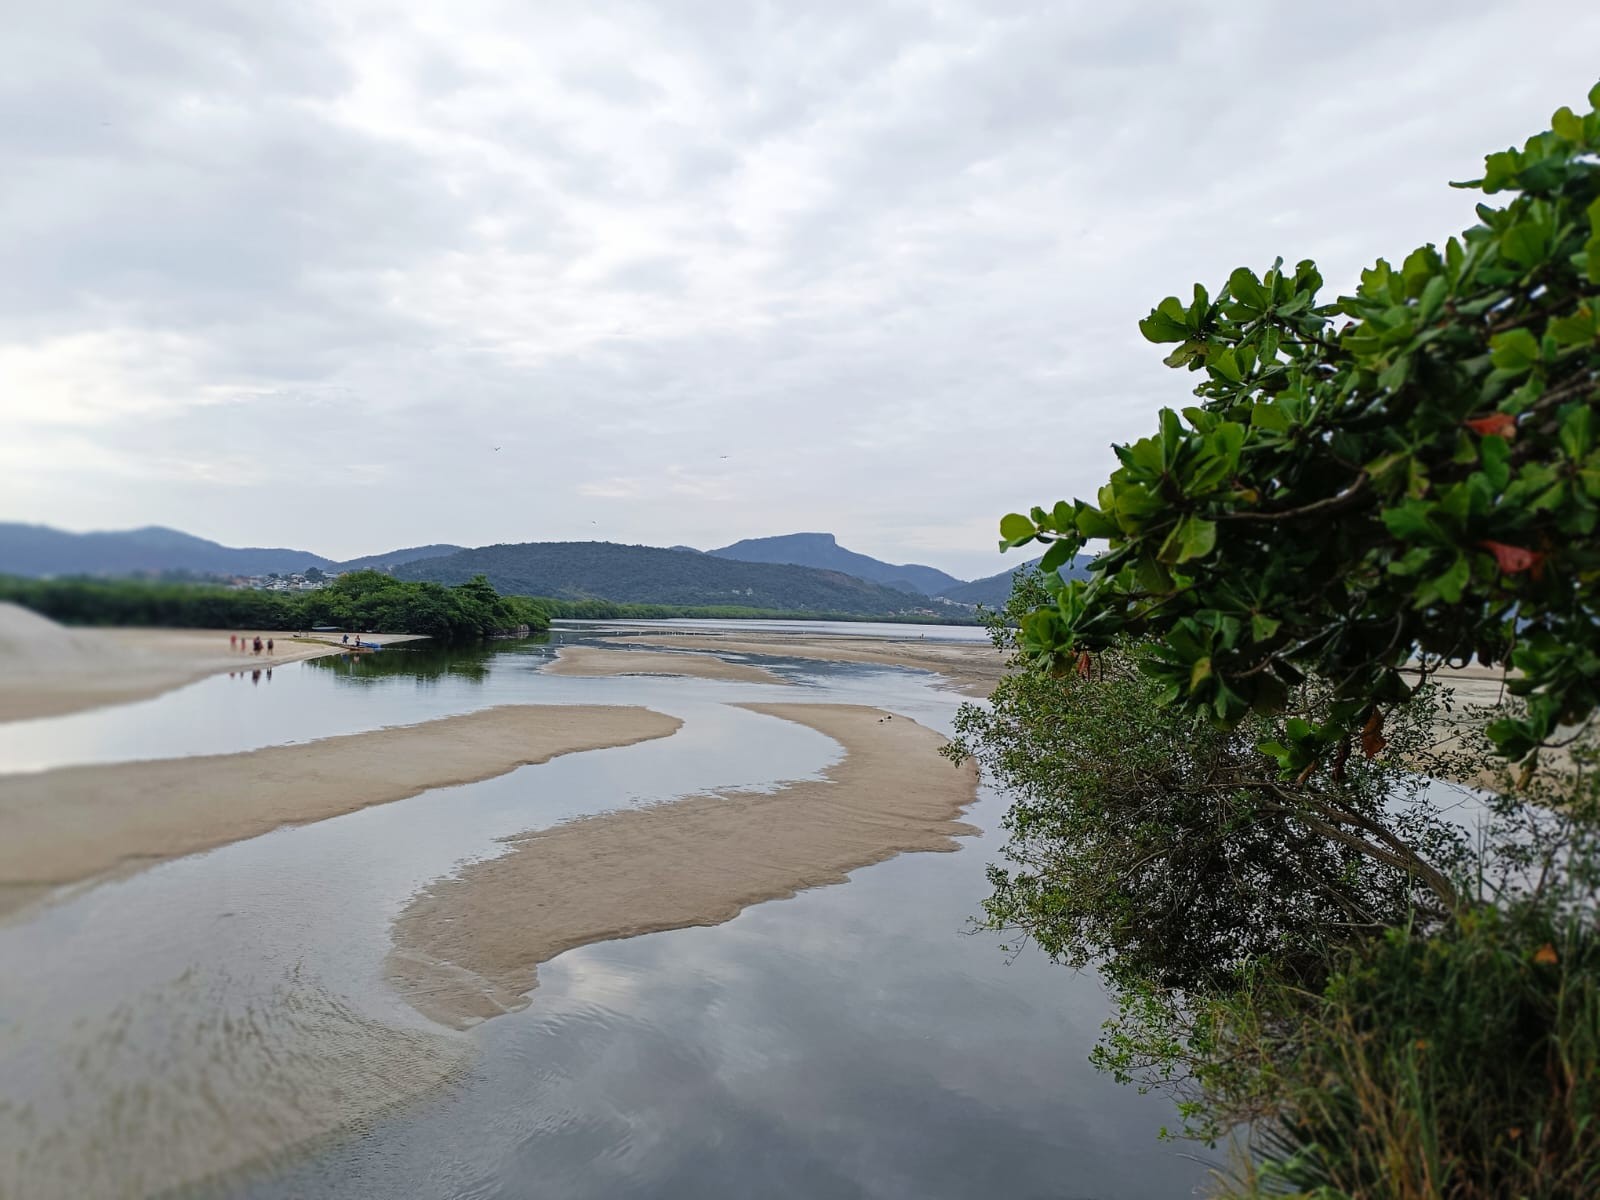 Bancos de areia aparentes no canal: pescadores dizem que a Lagoa de Itaipu nunca esteve tão seca — Foto: Lívia Neder